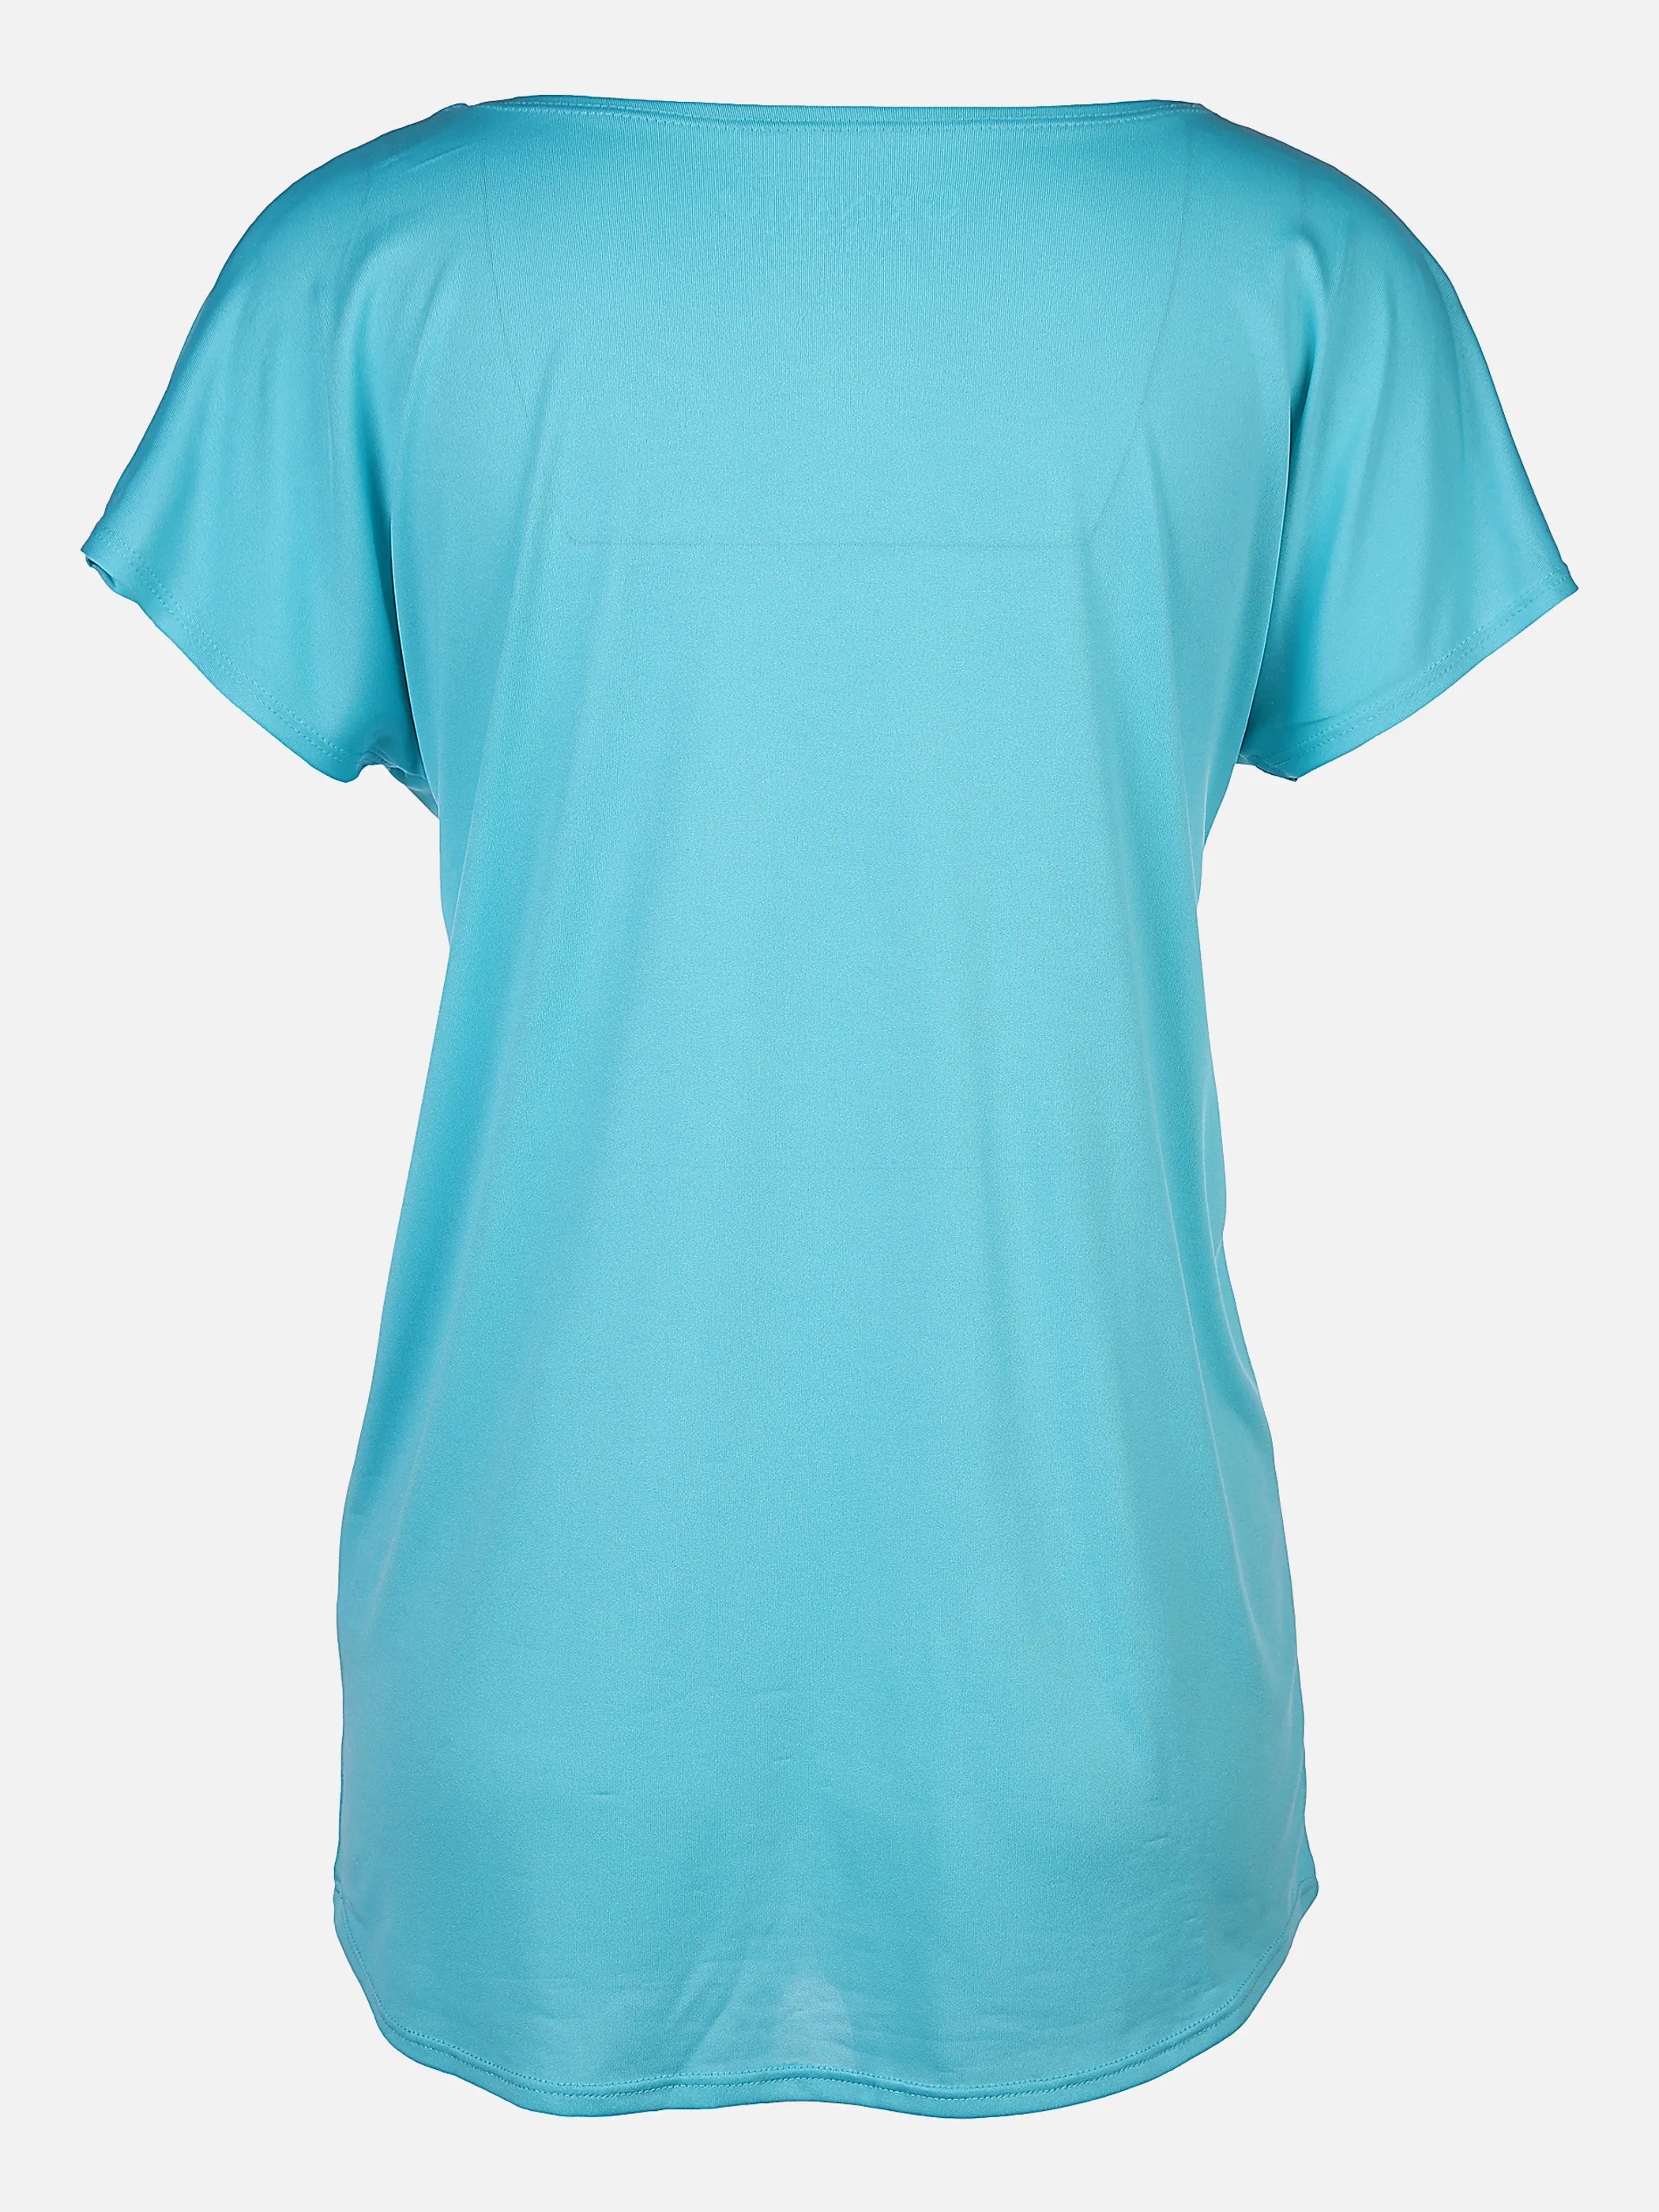 Grinario Sports Da-Sport-T-Shirt, Rundhals Blau 861368 BLAU 2